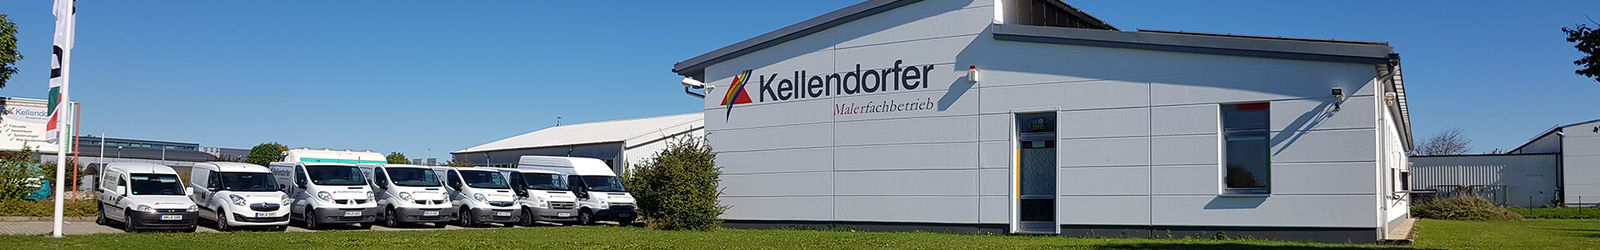 Erfahren Sie hier mehr über den Malerbetrieb Kellendorfer und die Mitarbeiter